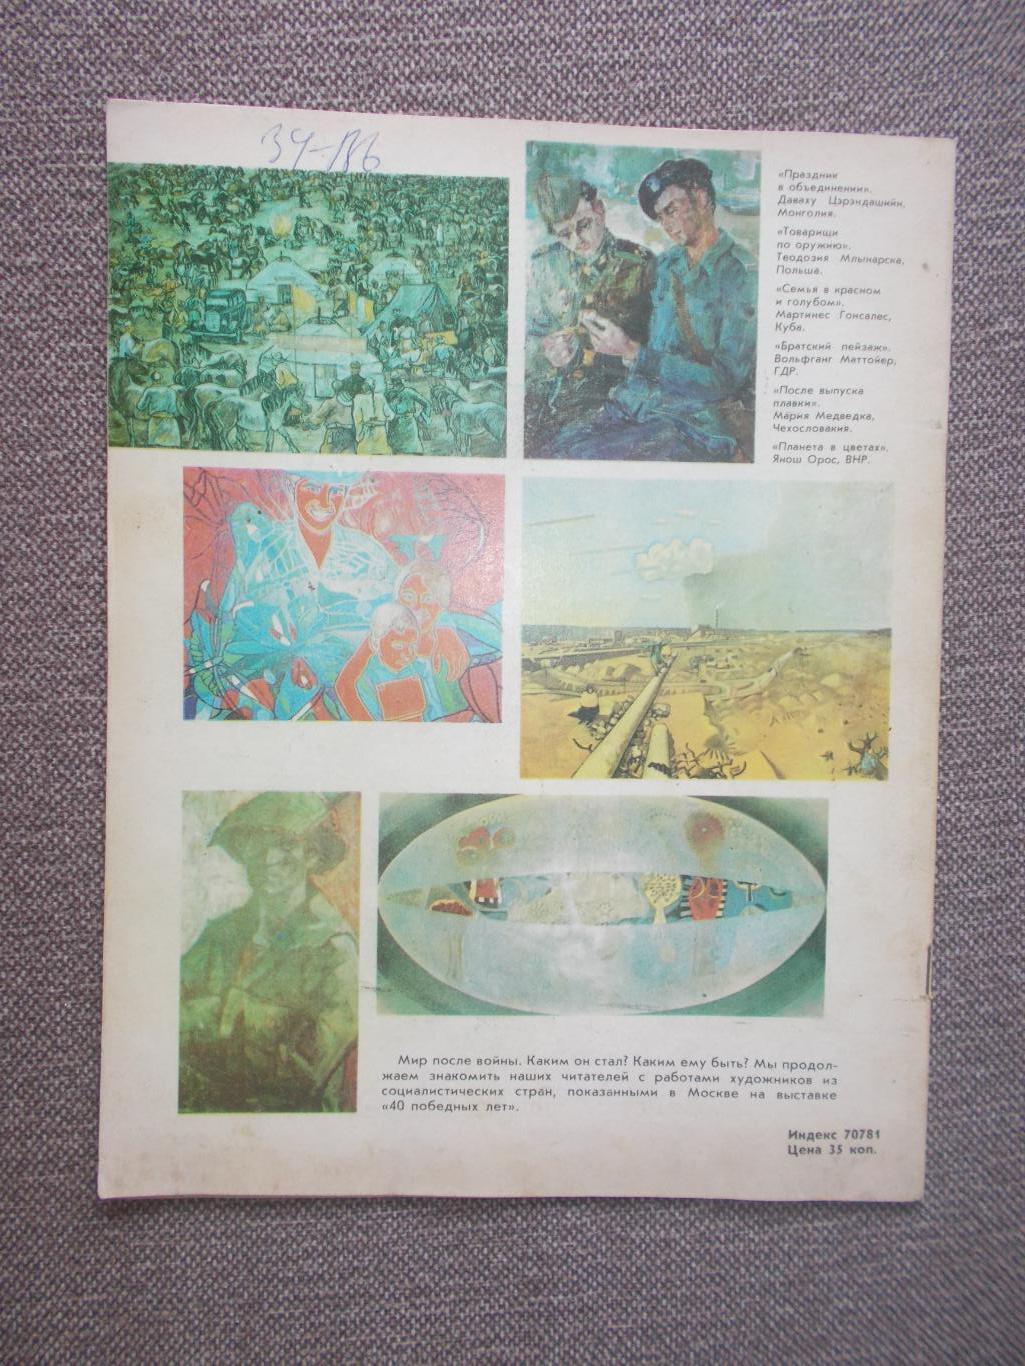 Журнал СССР :Ровесник№ 2 (февраль) 1986 г. (Молодежный музыкальный журнал) 1